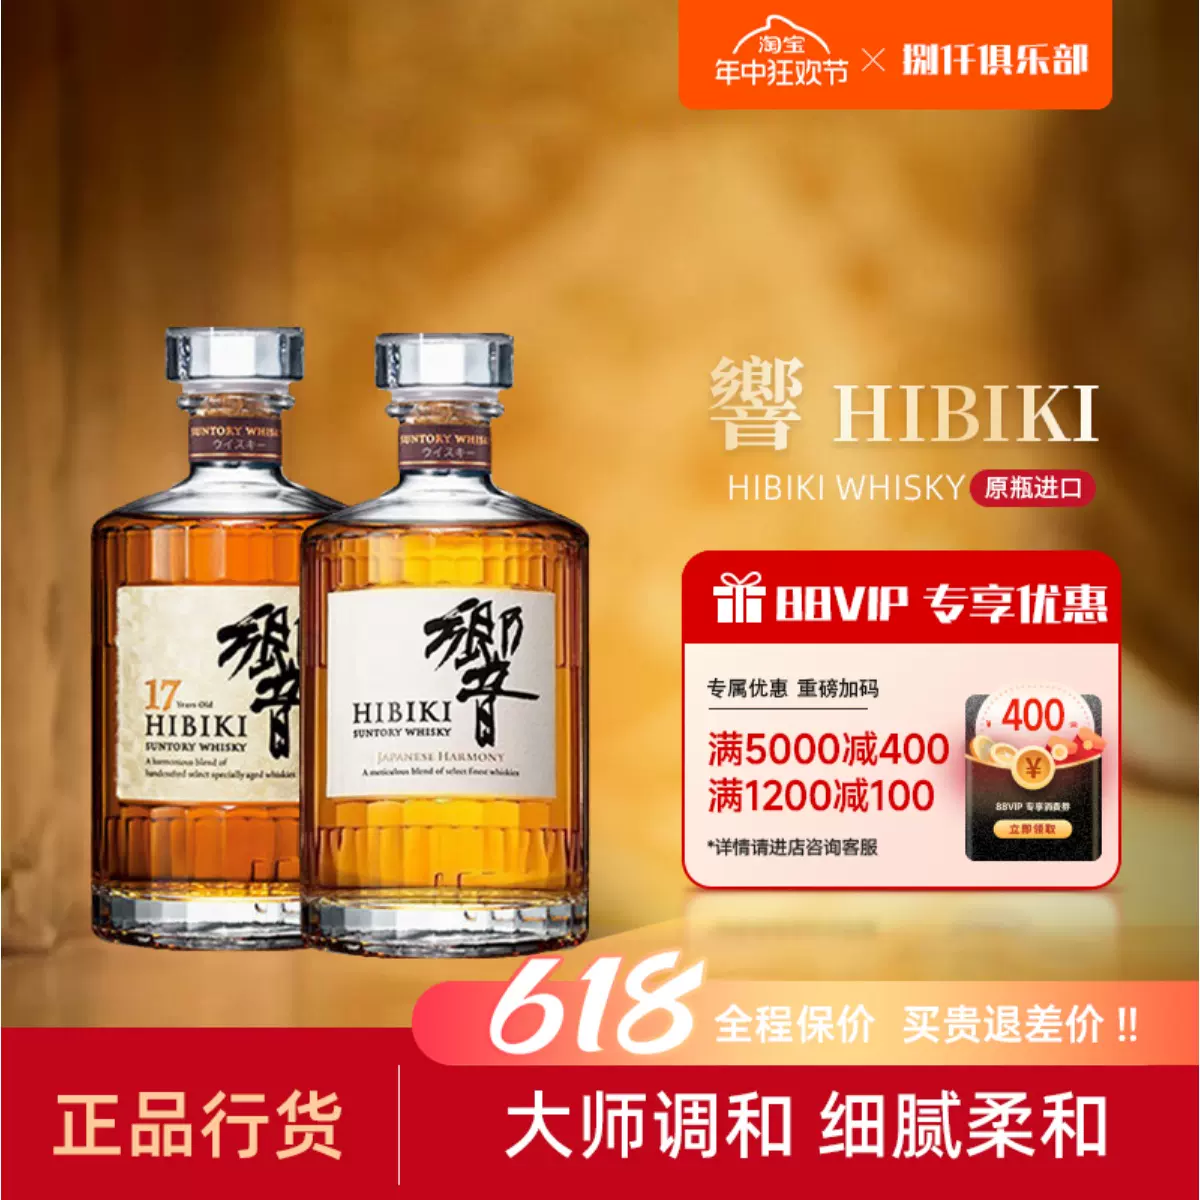 正品行货]日本威士忌响和风醇韵HIBIKI響牌17年威士忌21调和洋酒-Taobao 